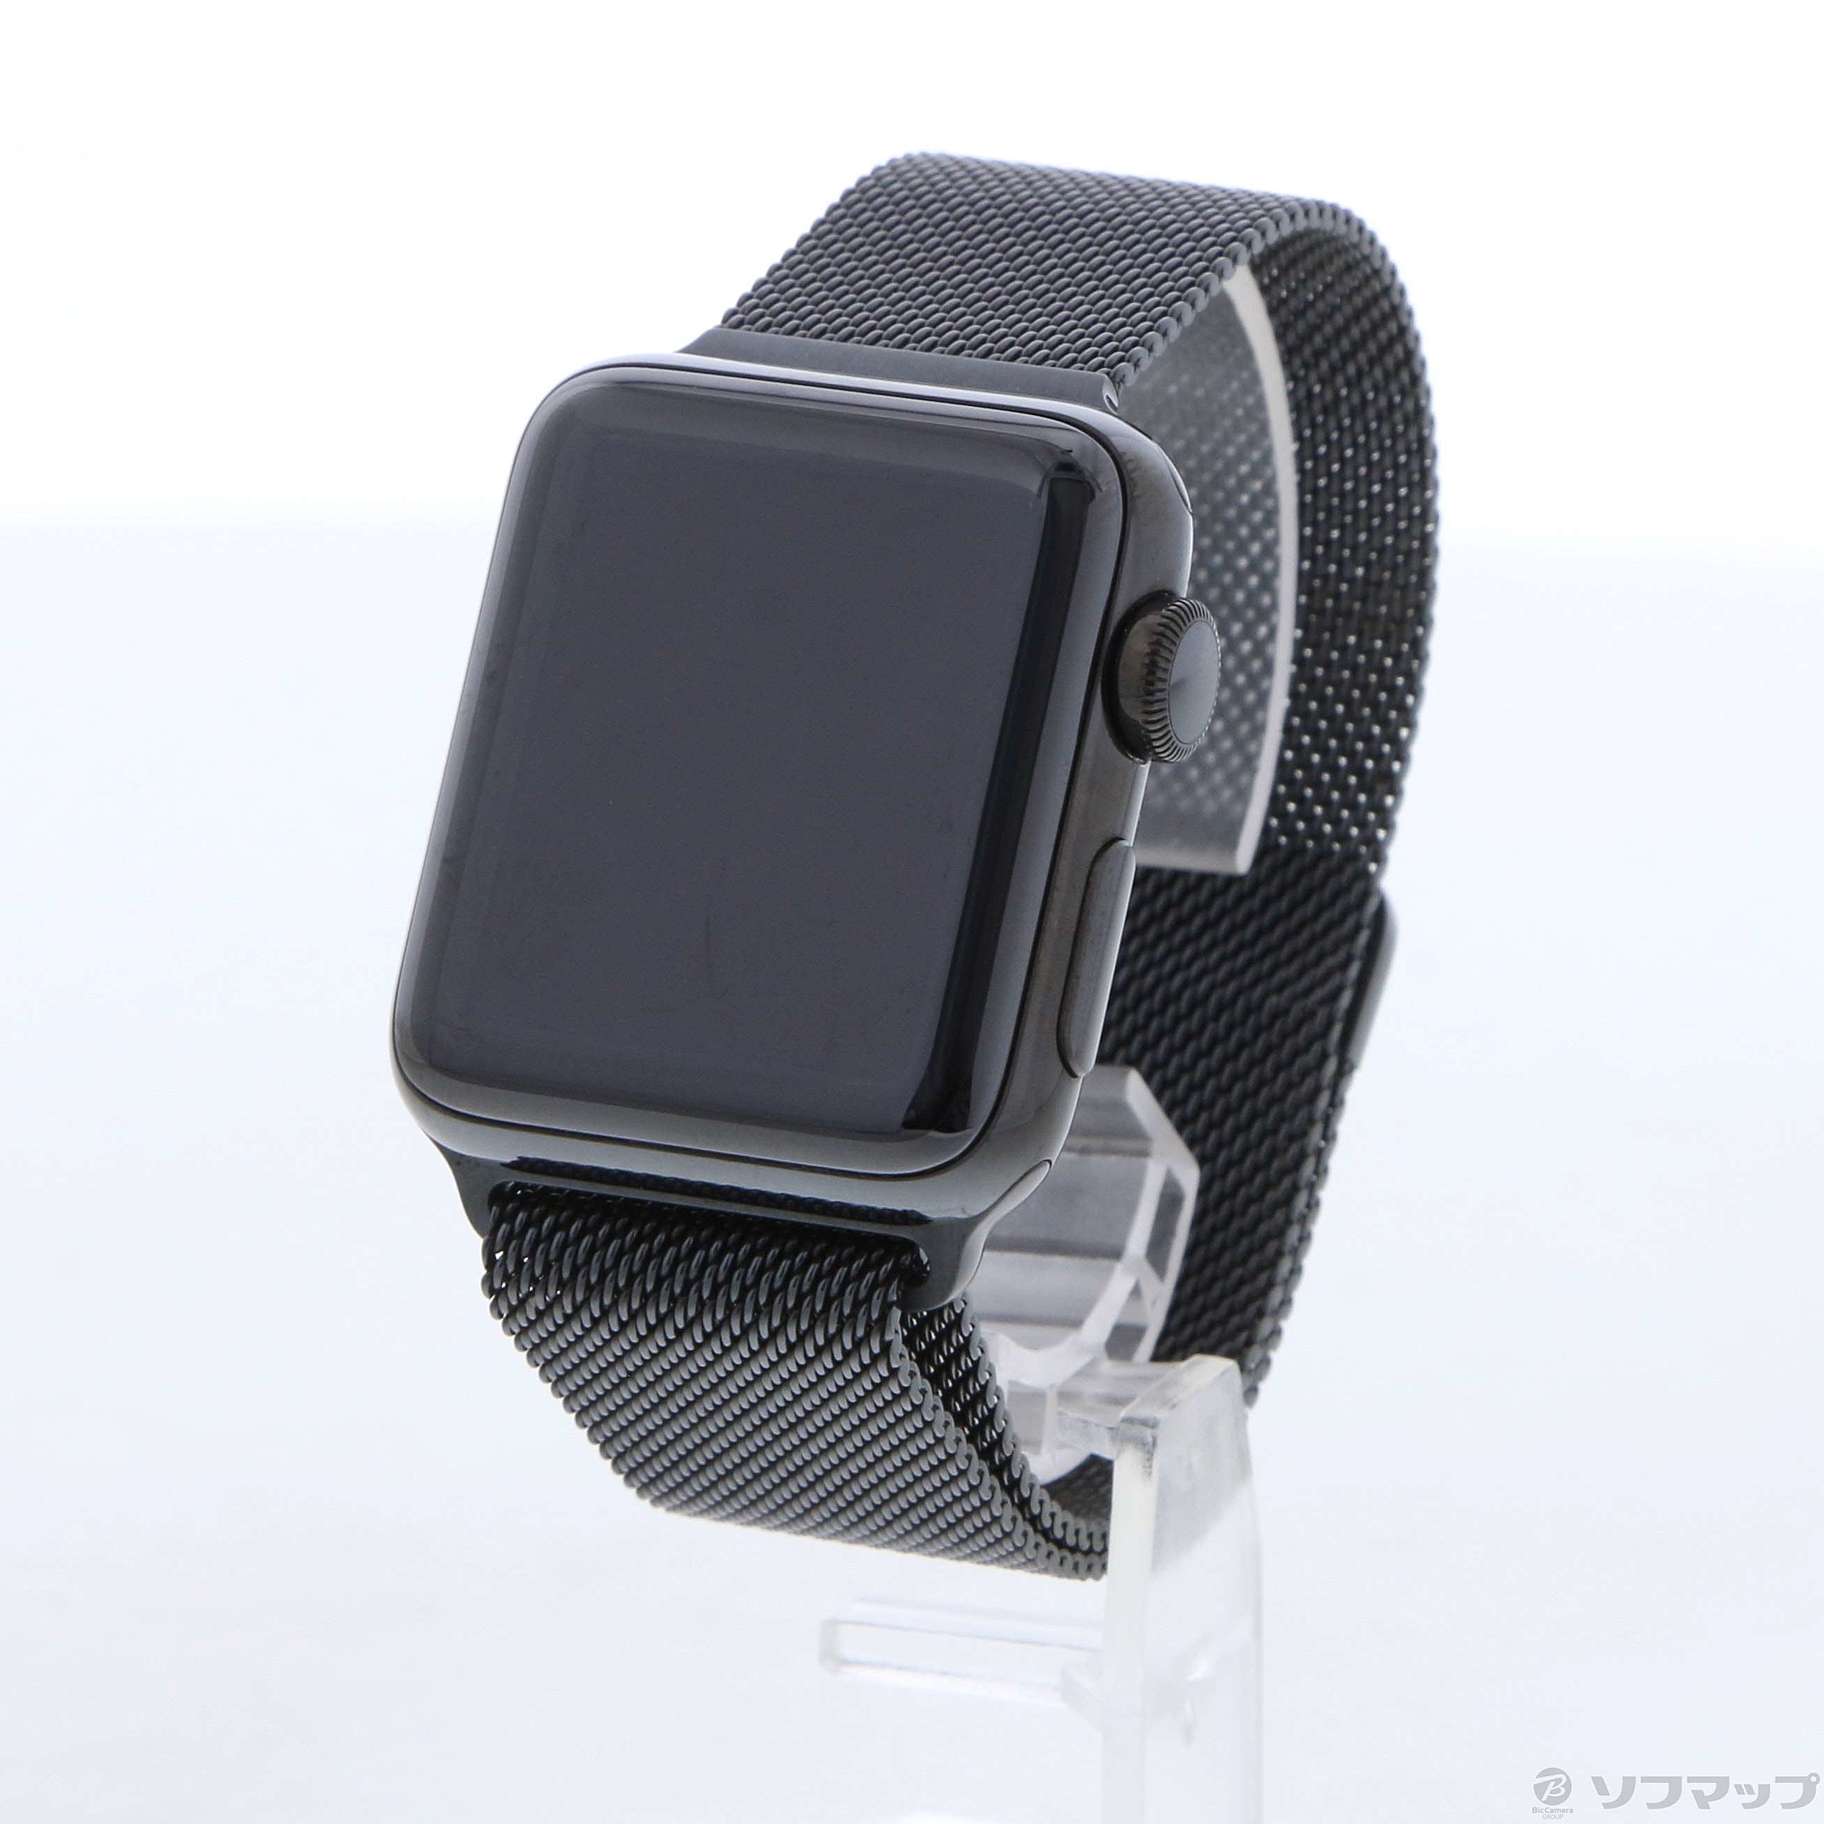 アップルウォッチ ミラネーゼループ Apple Watch 38mm